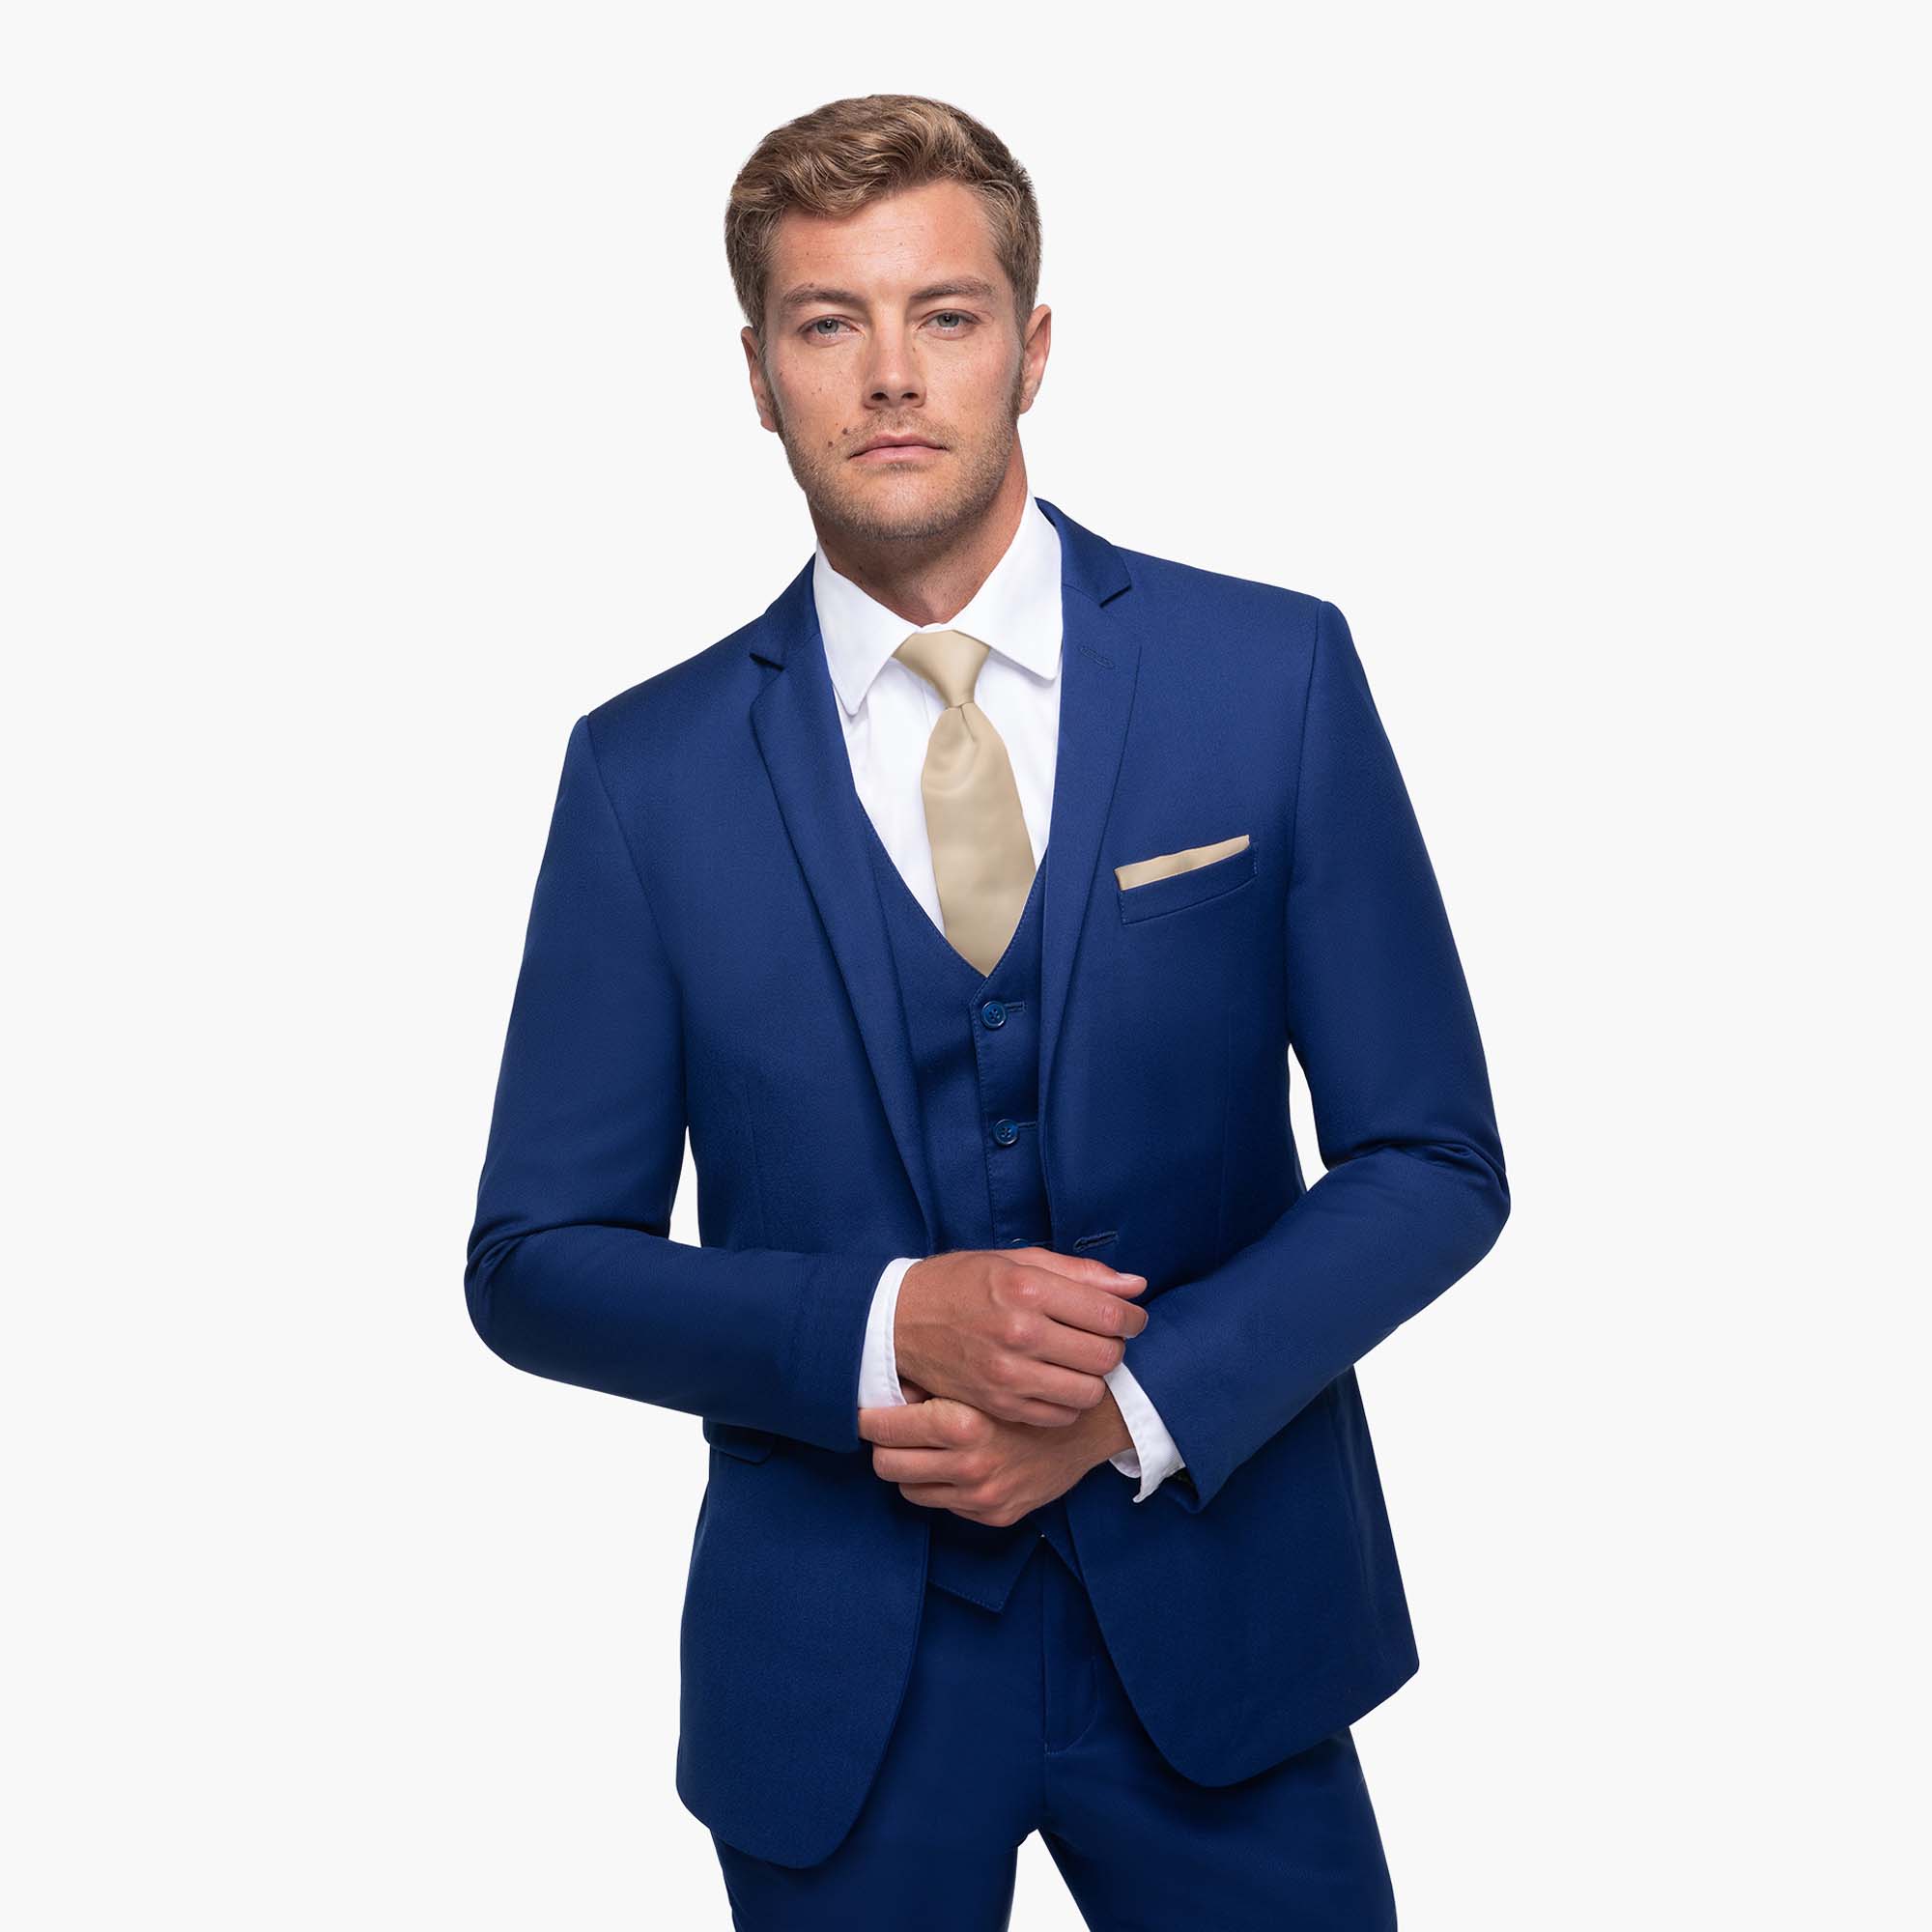 9 Blue suits ideas  blue suit, mens fashion, suit and tie